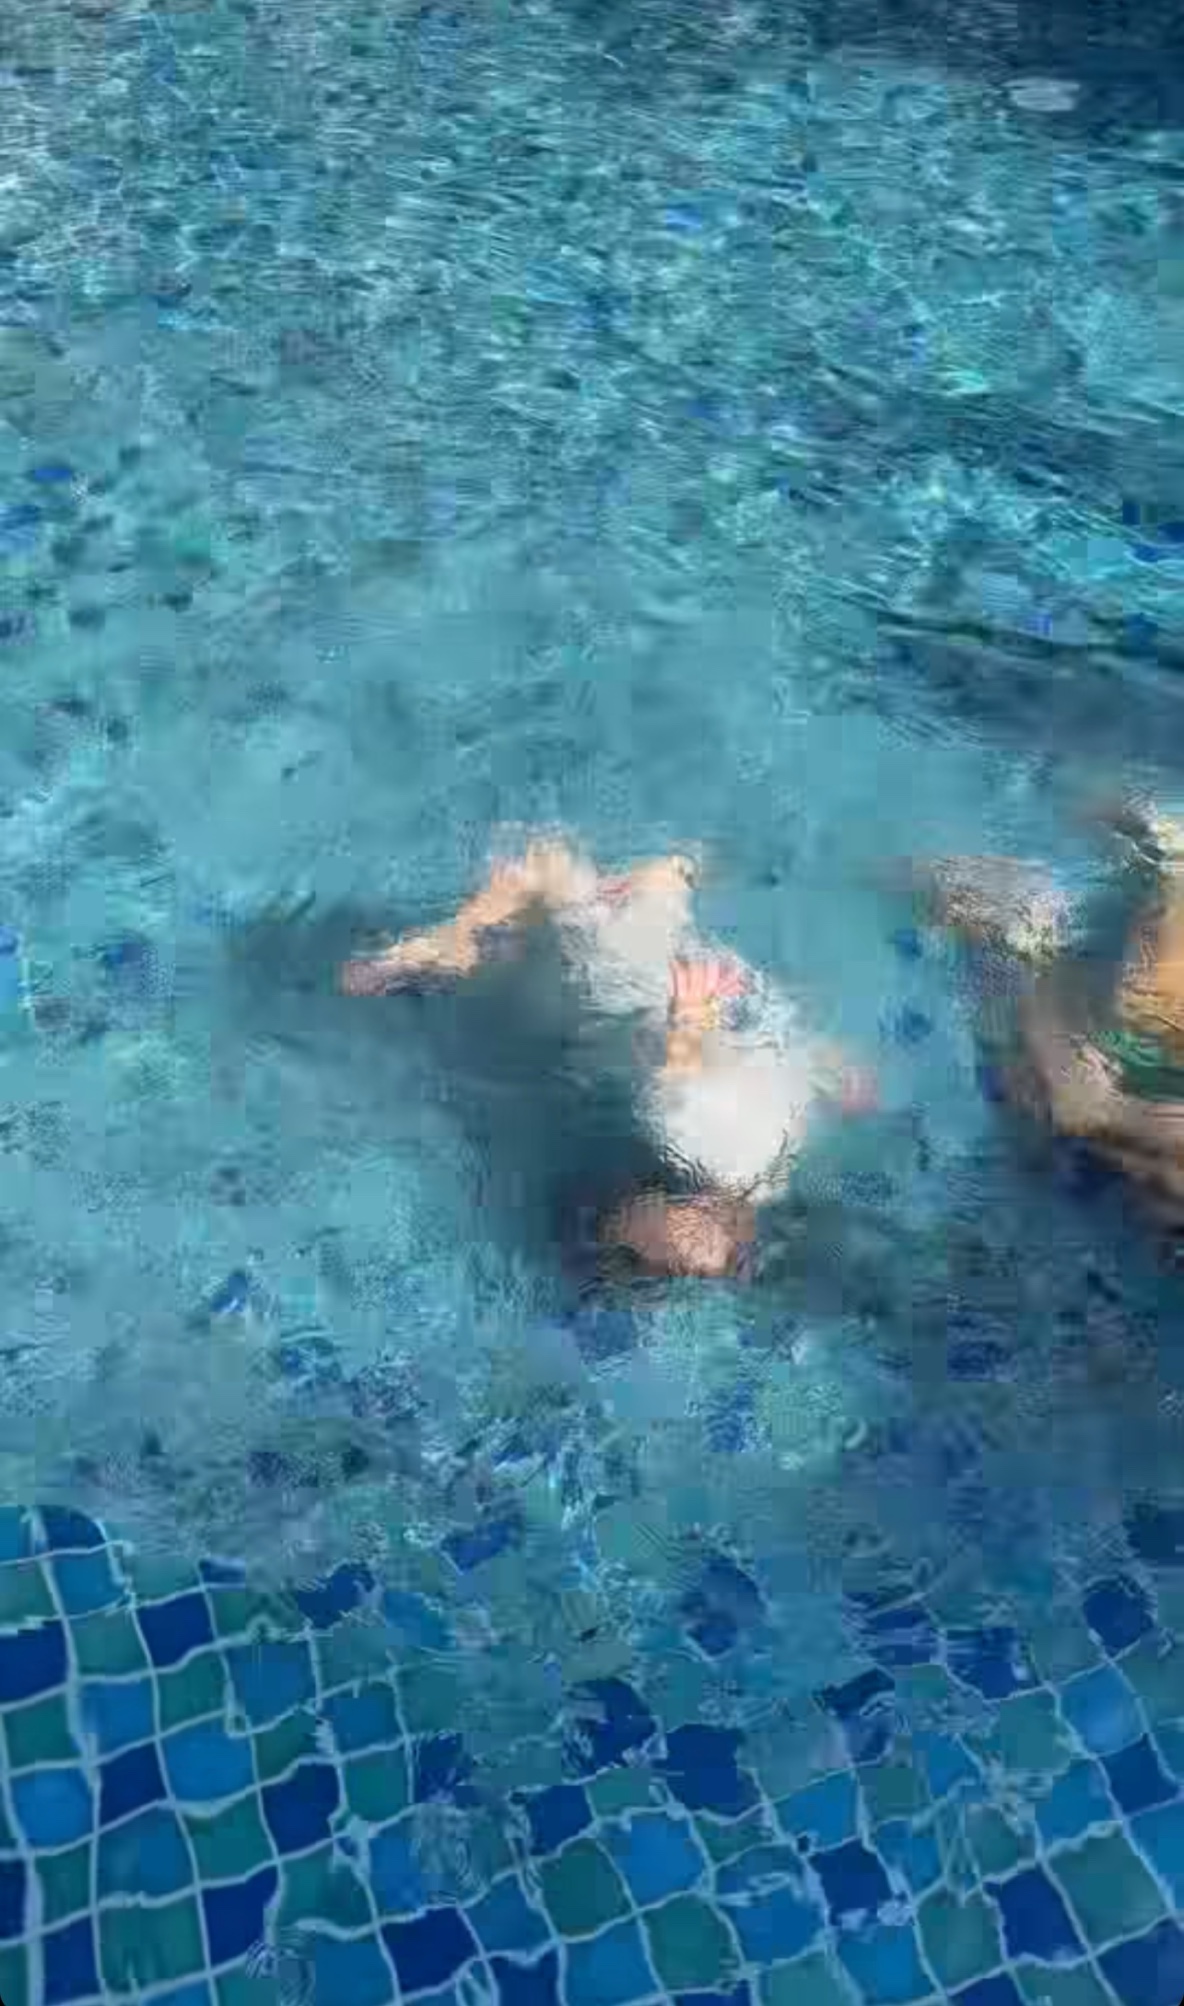 Con trai Hồ Ngọc Hà 3 tuổi lộ thiên phú bơi lội đặc biệt, xoay vài vòng dưới nước không ai hỗ trợ? - ảnh 3